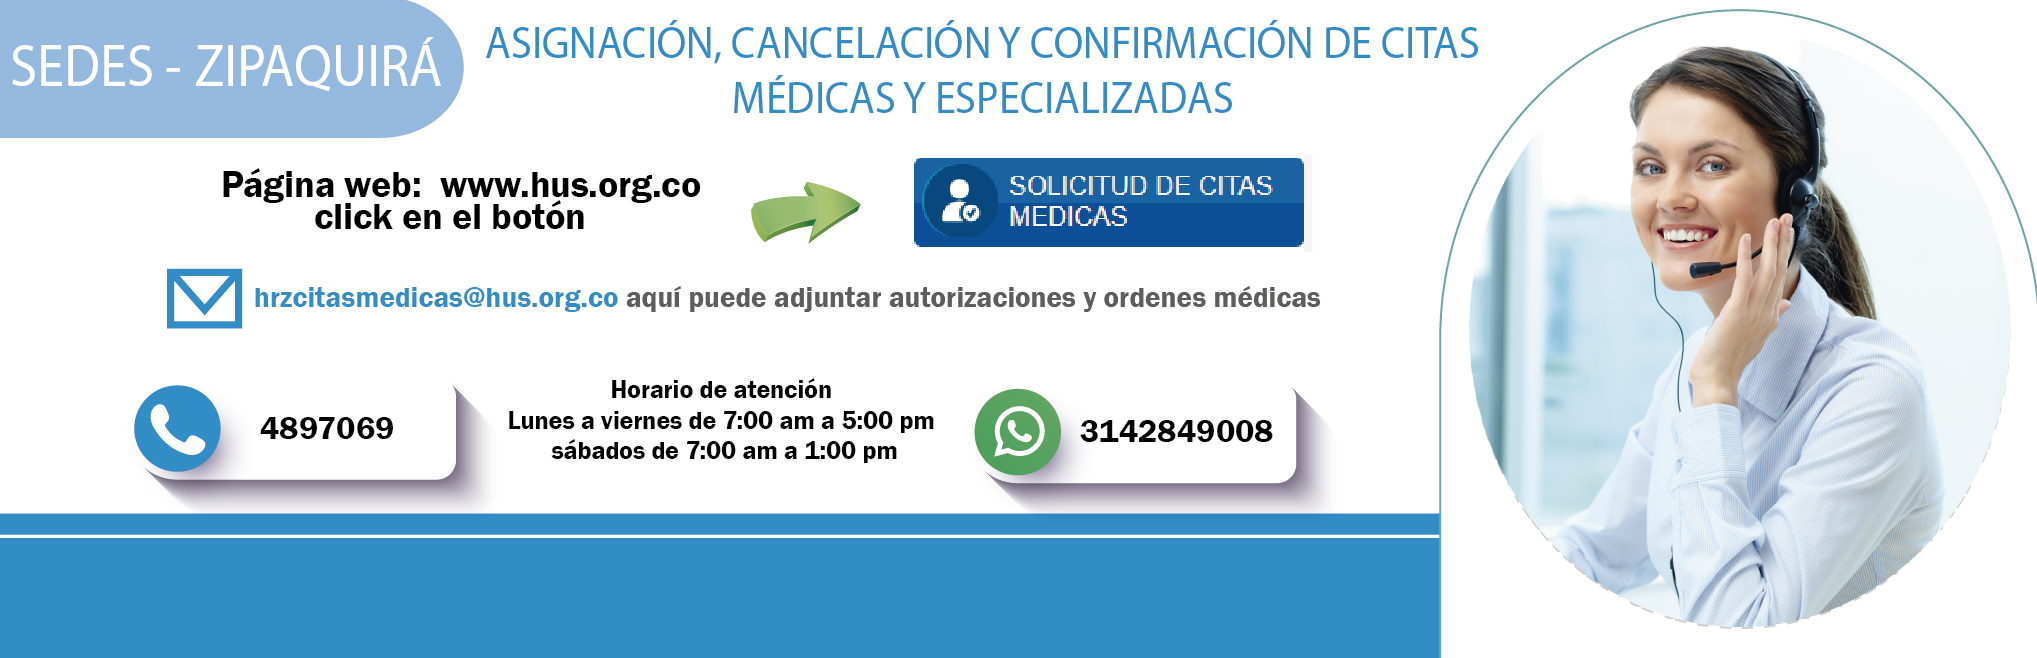 Bogota asignacion confirmacion y cancelacion de citas medicas